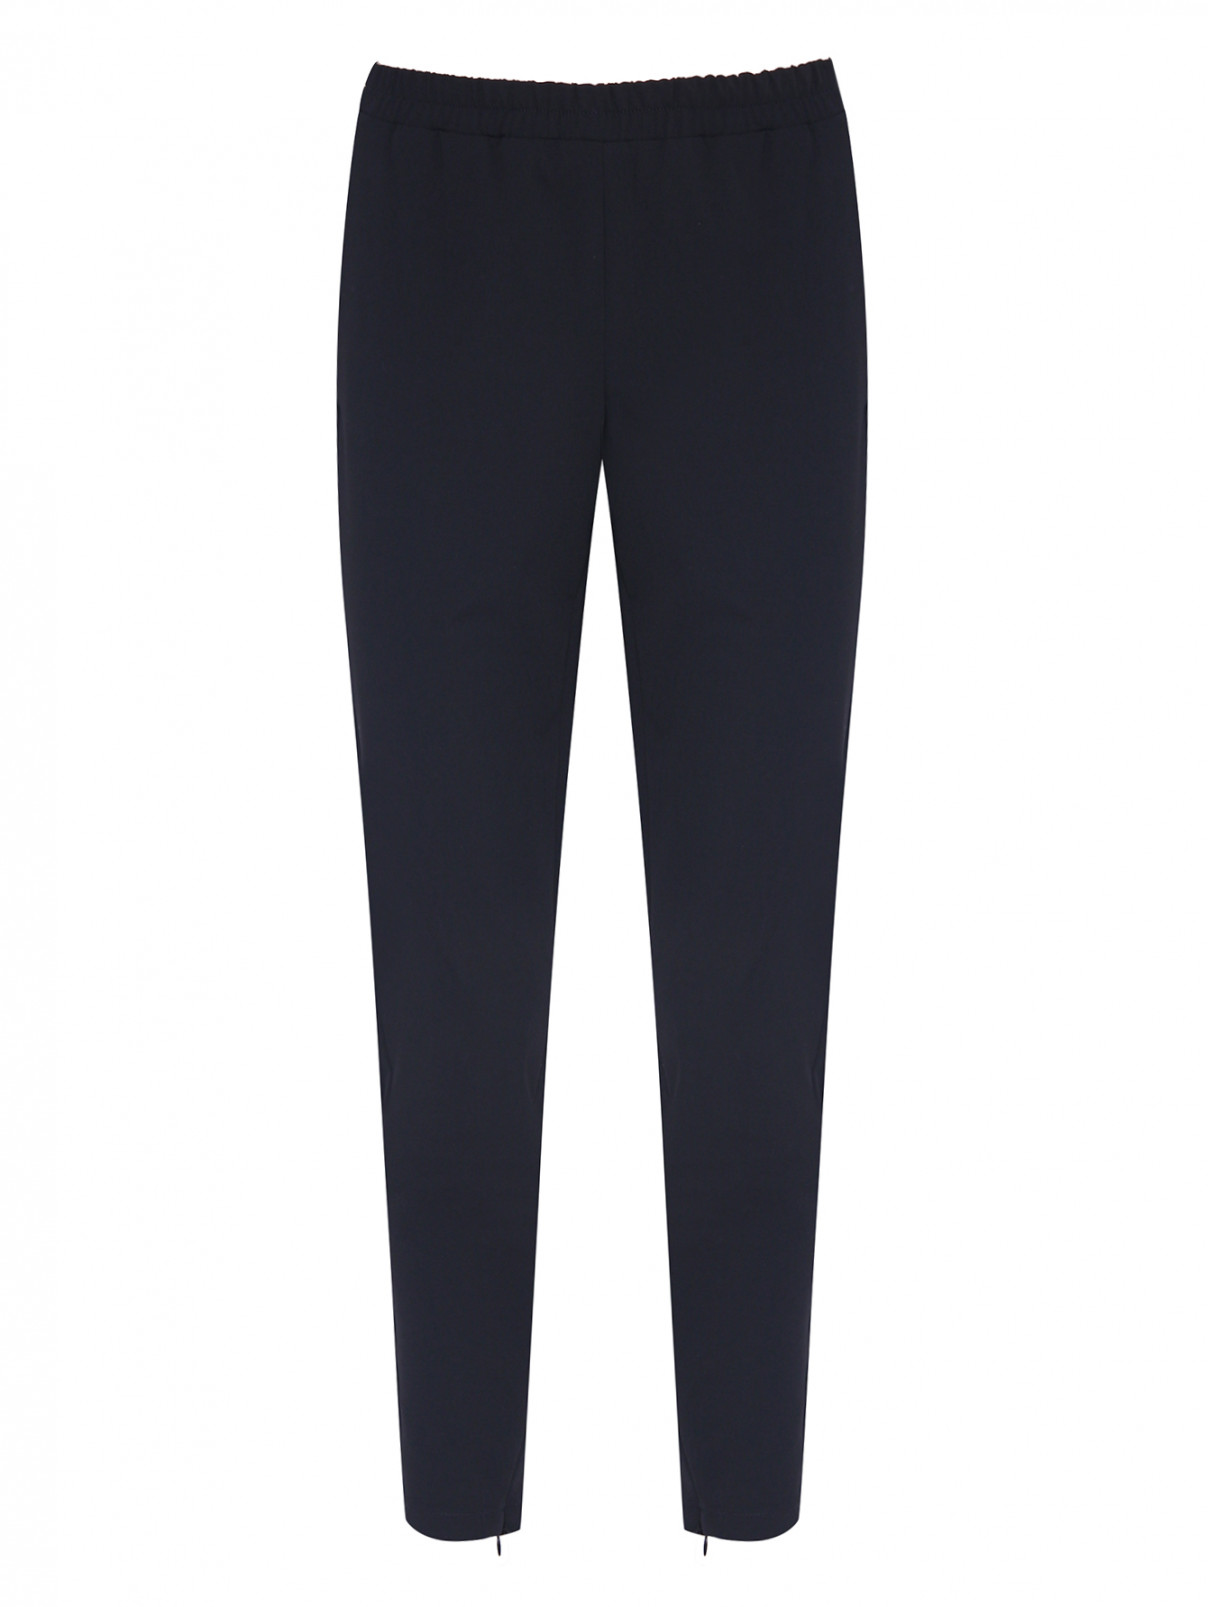 Зауженные брюки на резинке Love Moschino  –  Общий вид  – Цвет:  Черный